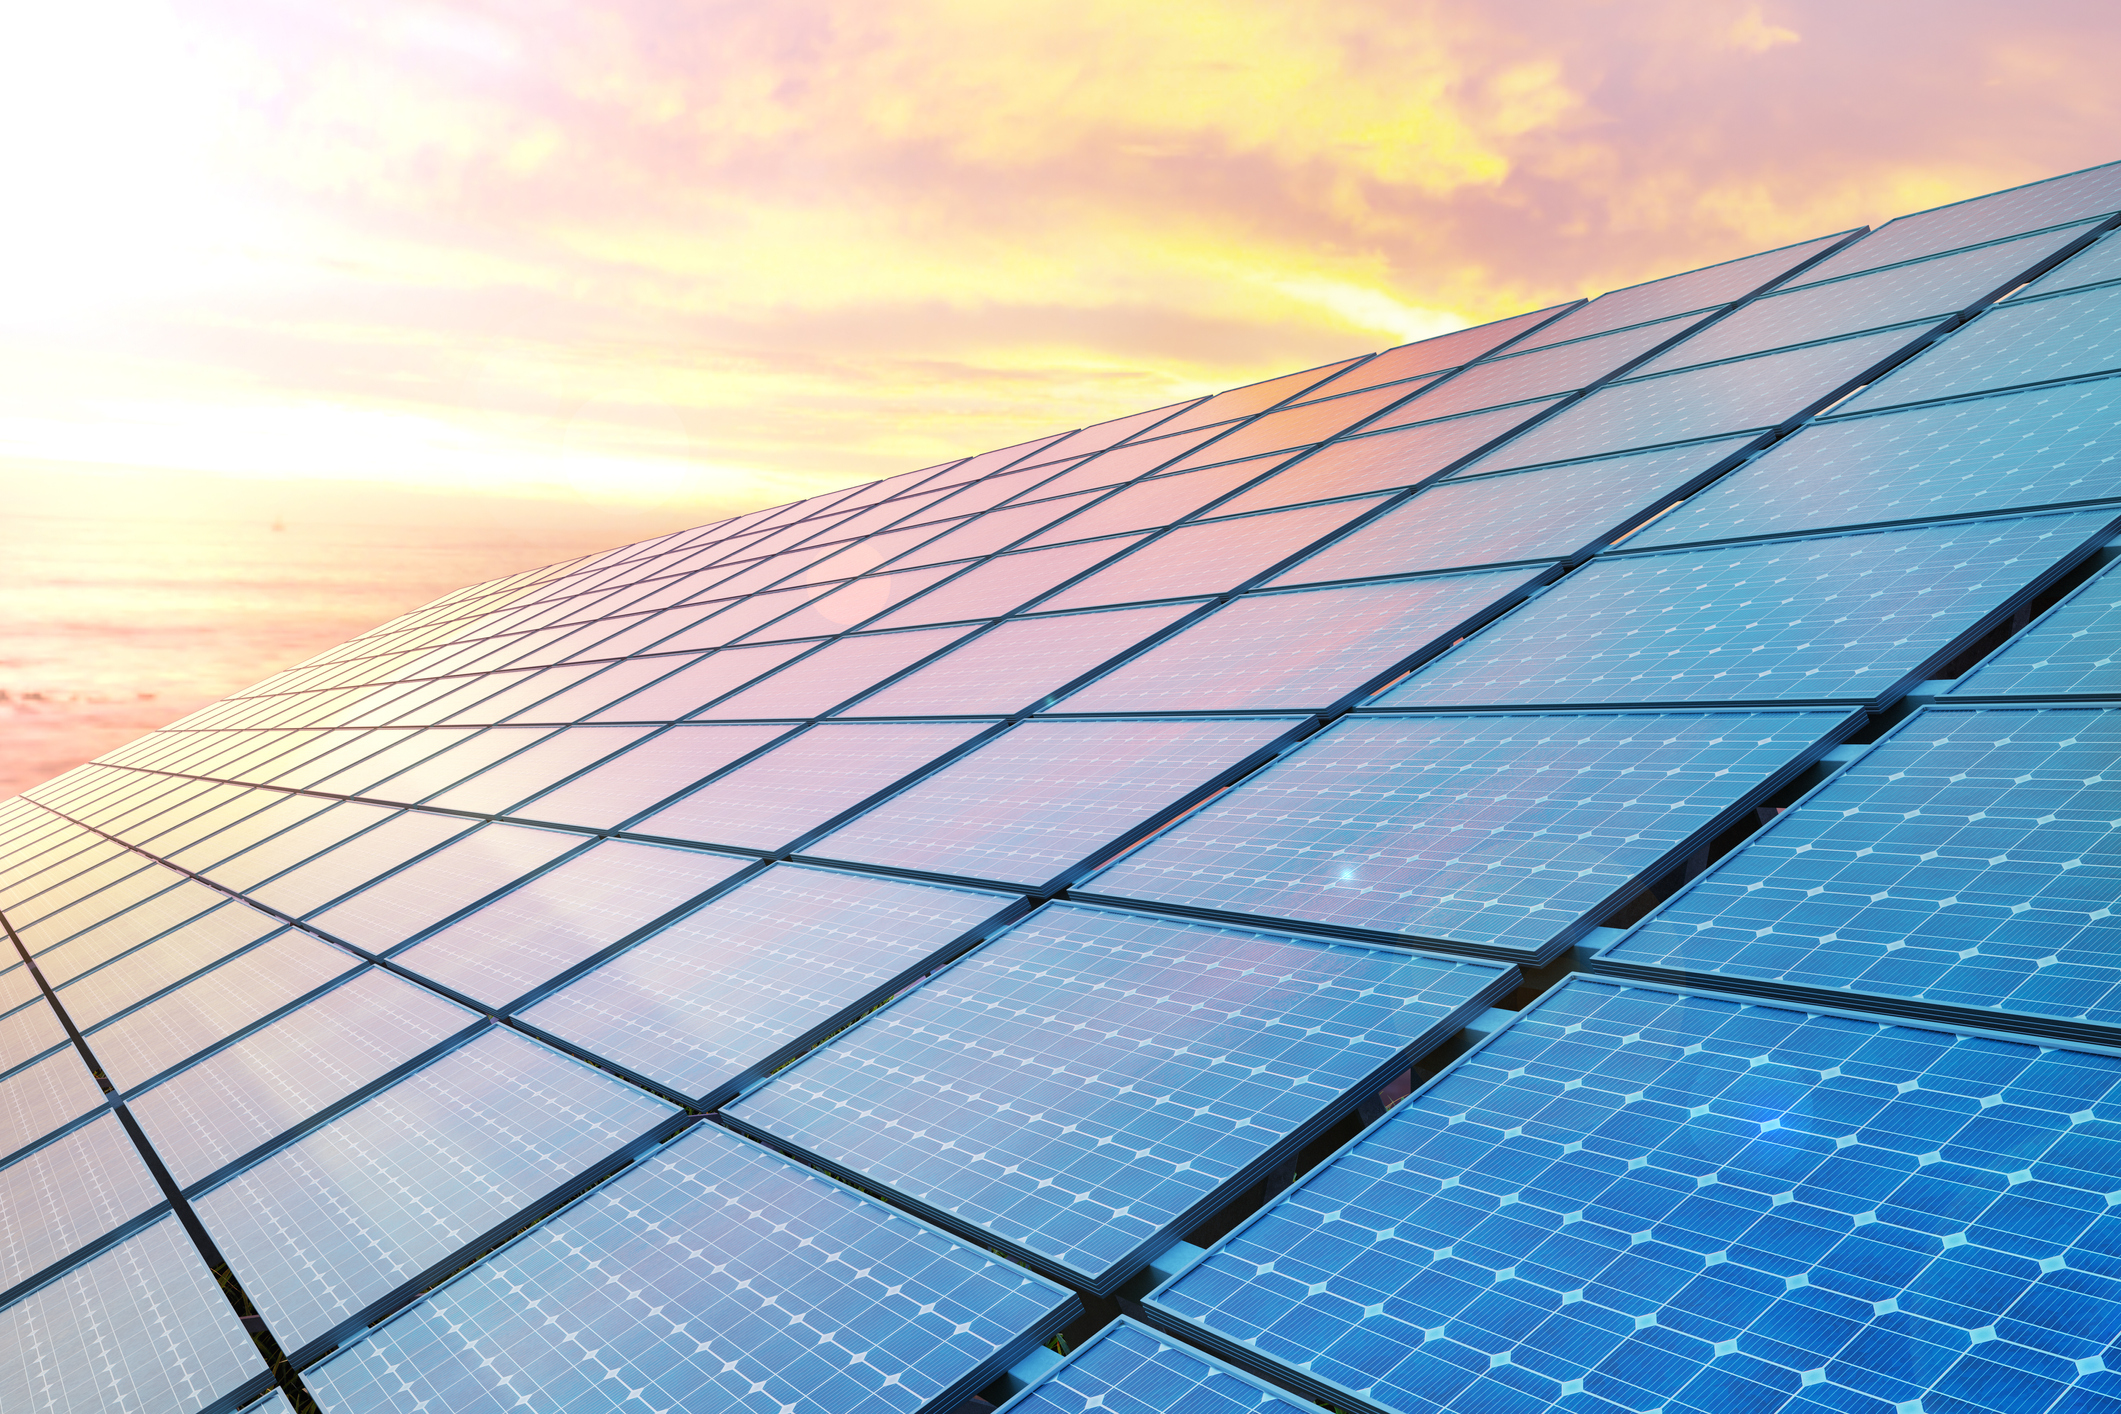 ΗΡΩΝ – RWE & ΔΕΗ Ανανεώσιμες: Mακροχρόνια σύμβαση αγοράς ηλεκτρικής ενέργειας από φωτοβολταϊκά